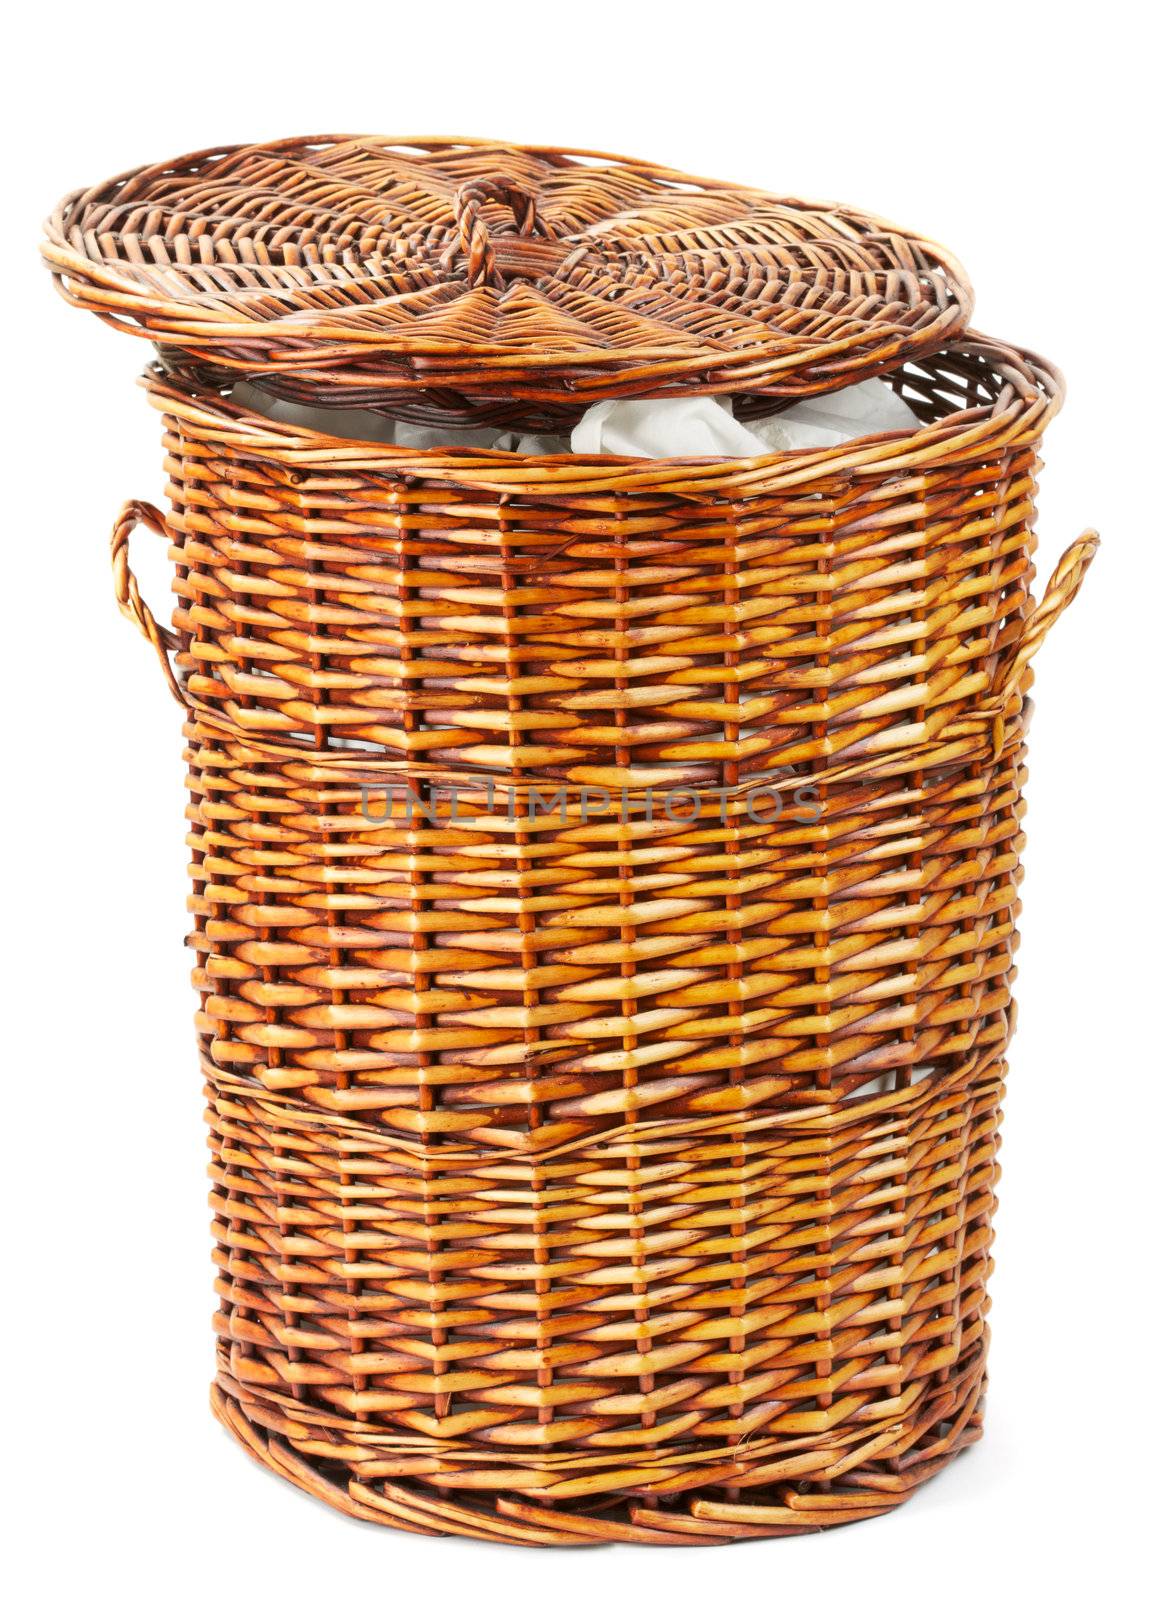 wooden laundry basket isolated on white background